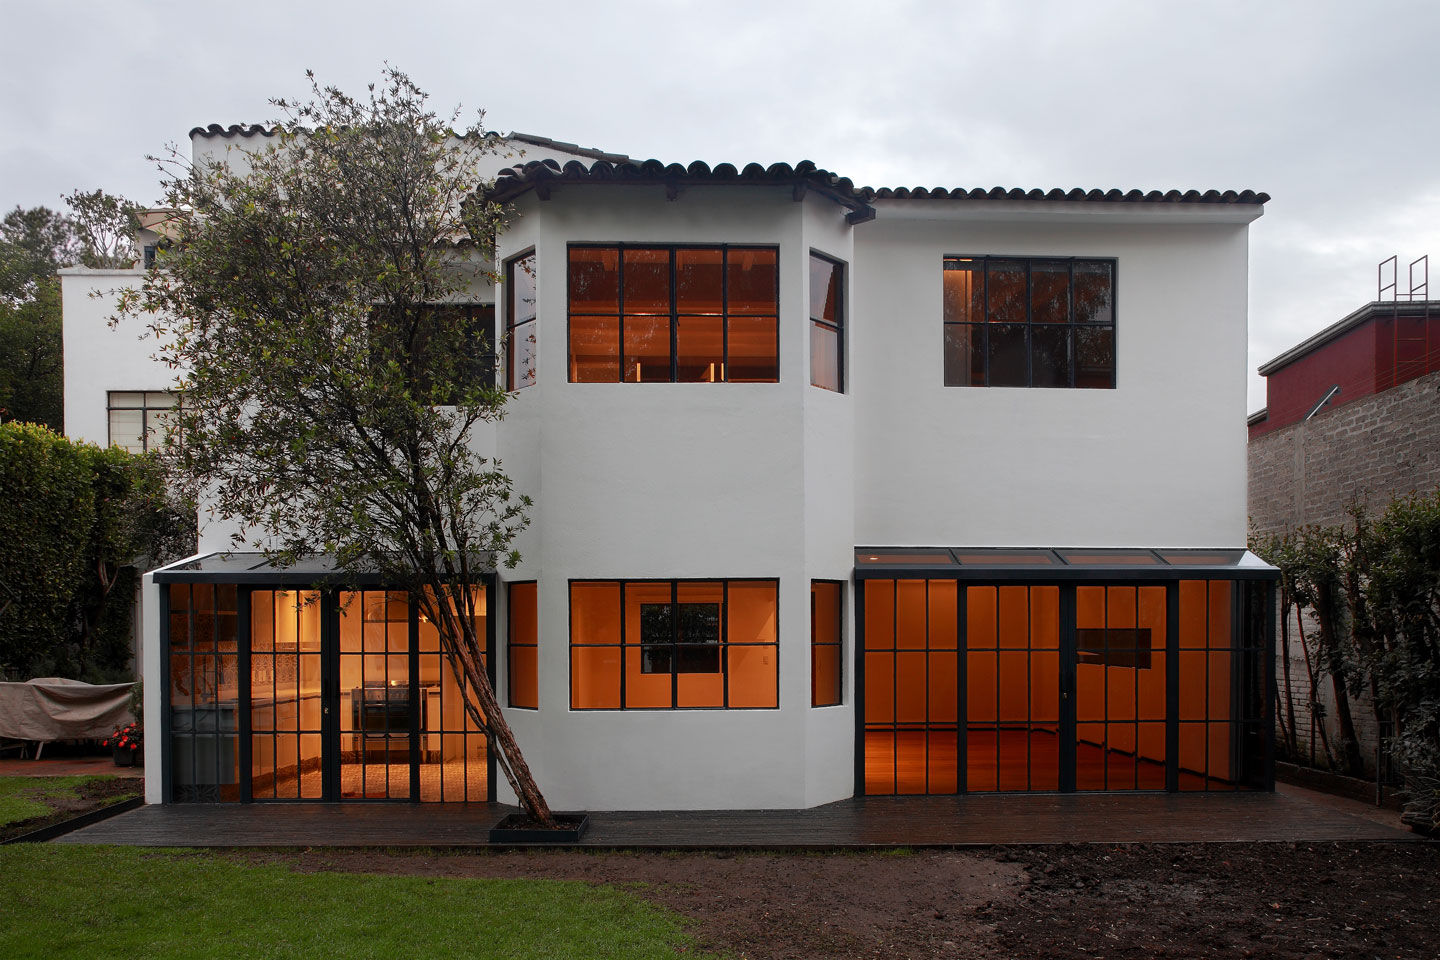 Fachada trasera BACE arquitectos Casas modernas ventanas,jardin,fachada,luz